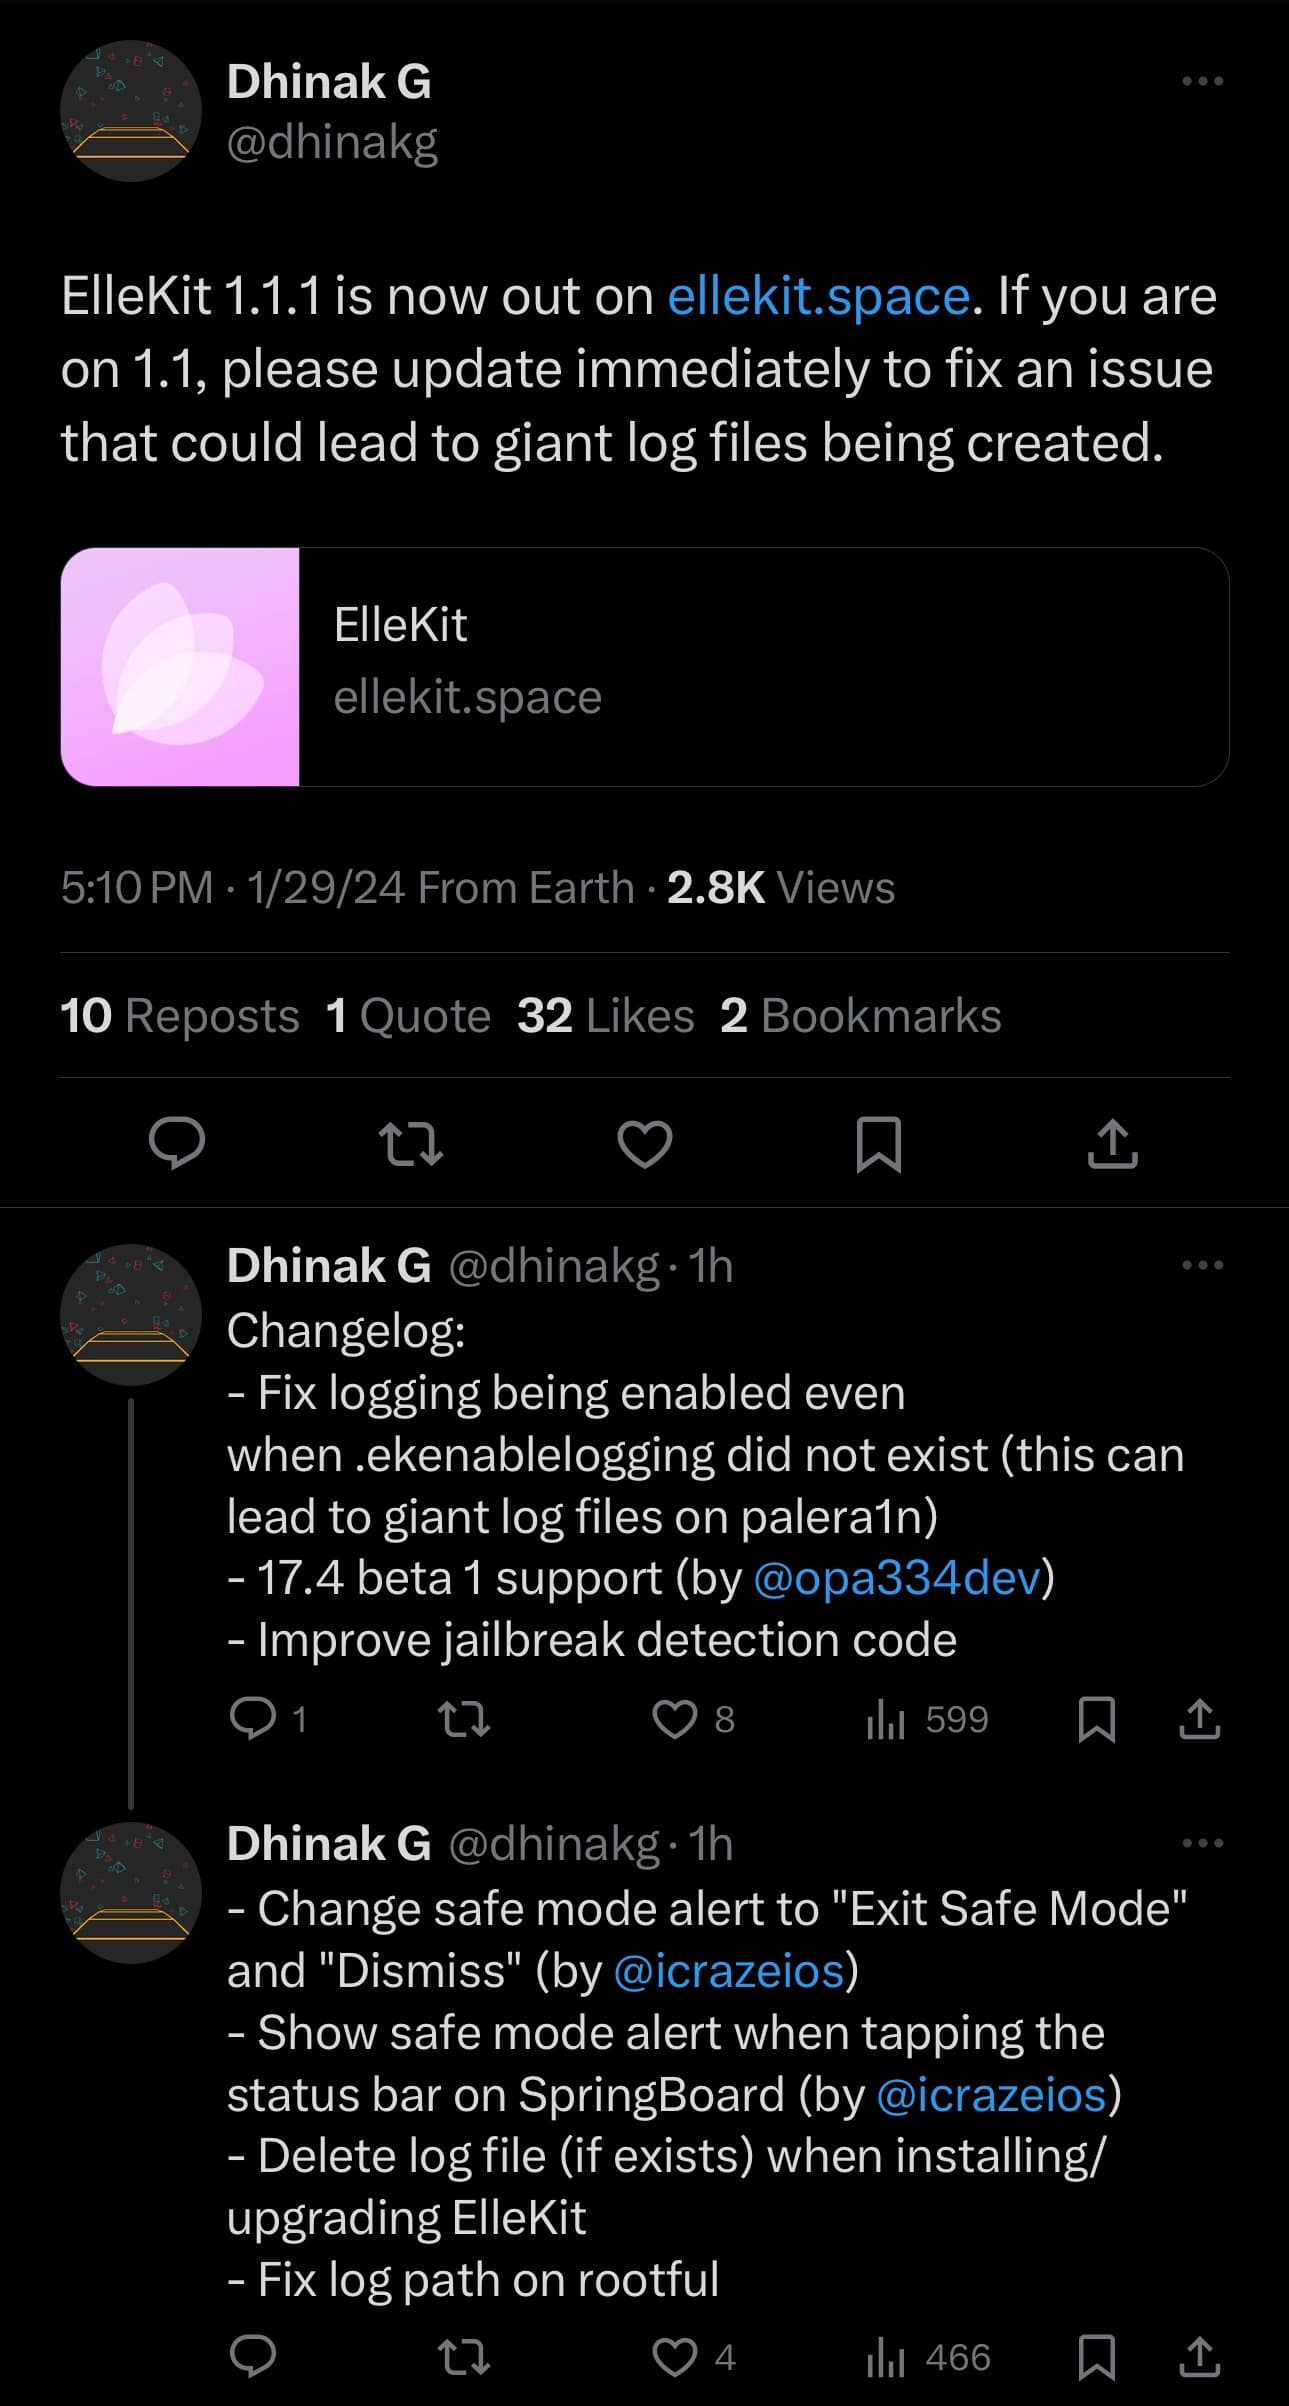 ElleKit v1.1.1 announced by dhinakg.